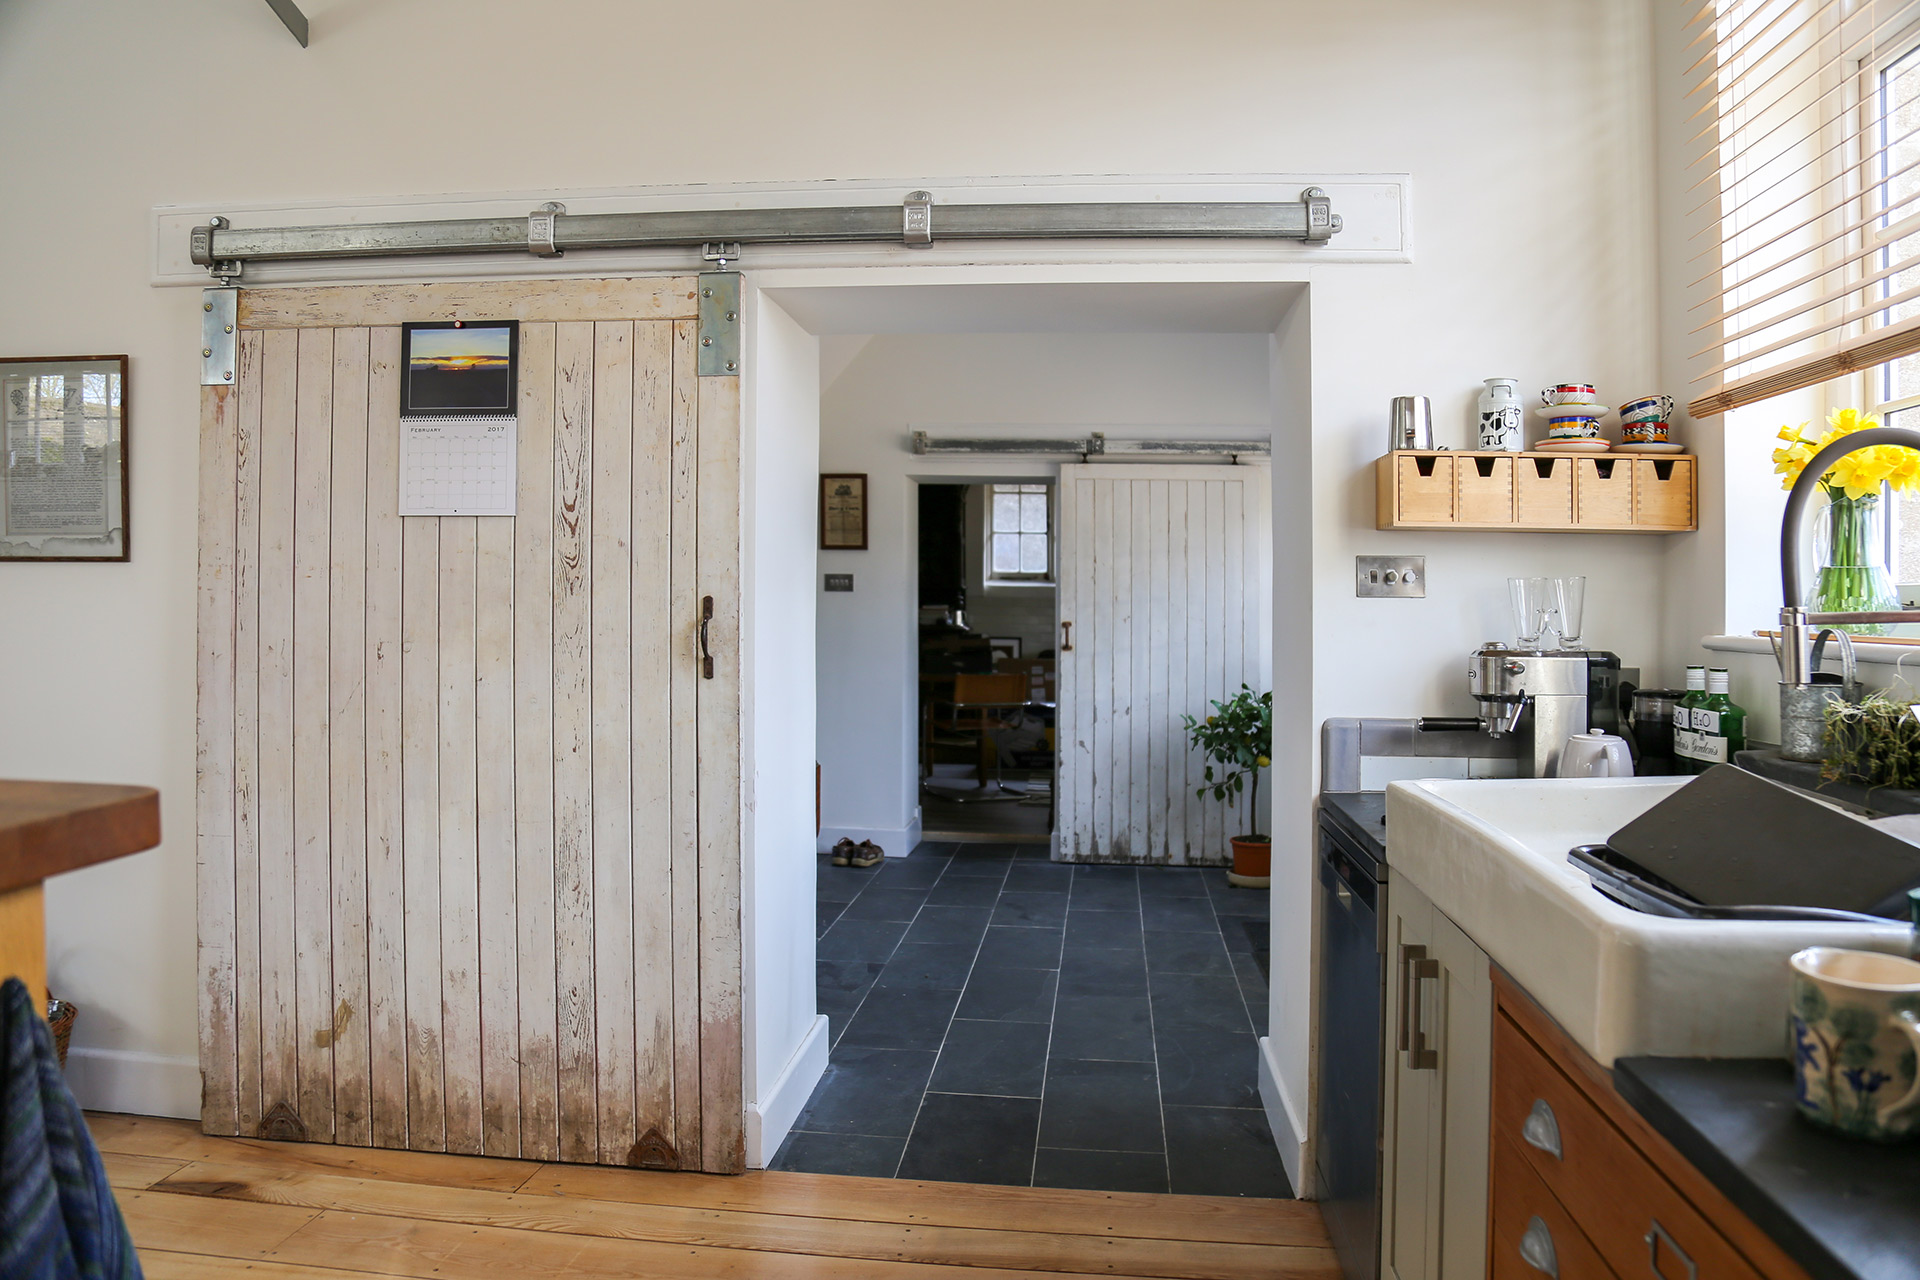 interior sliding wooden door in kitchen area